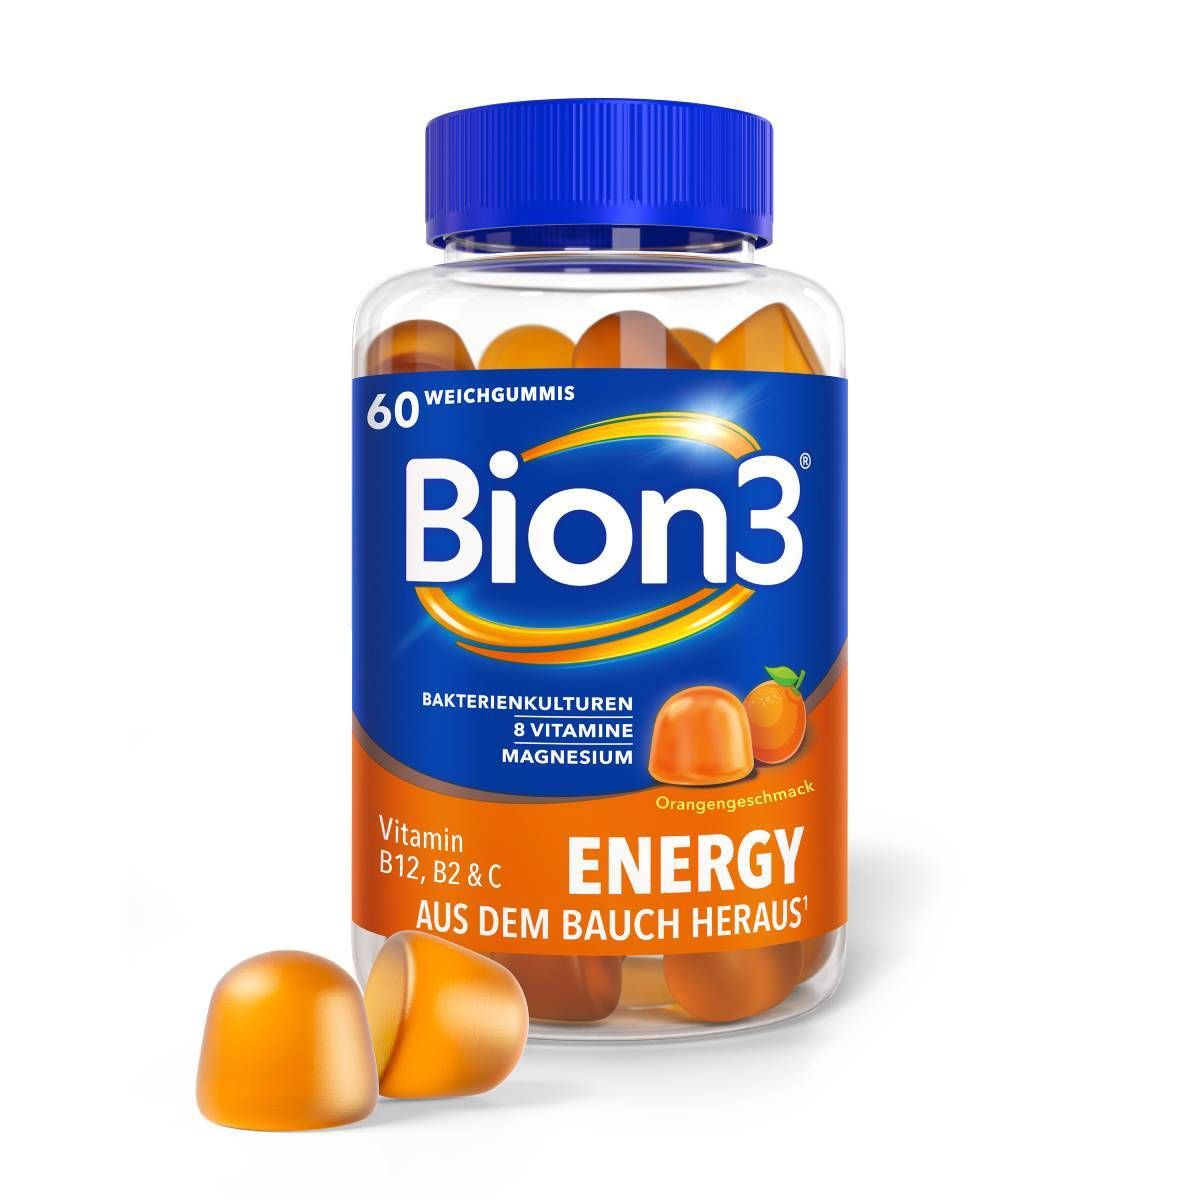 Bion3® Energy Weichgummis, Multivitamine mit Bakterienkulturen, Vitamin B12, C, D und Magnesium